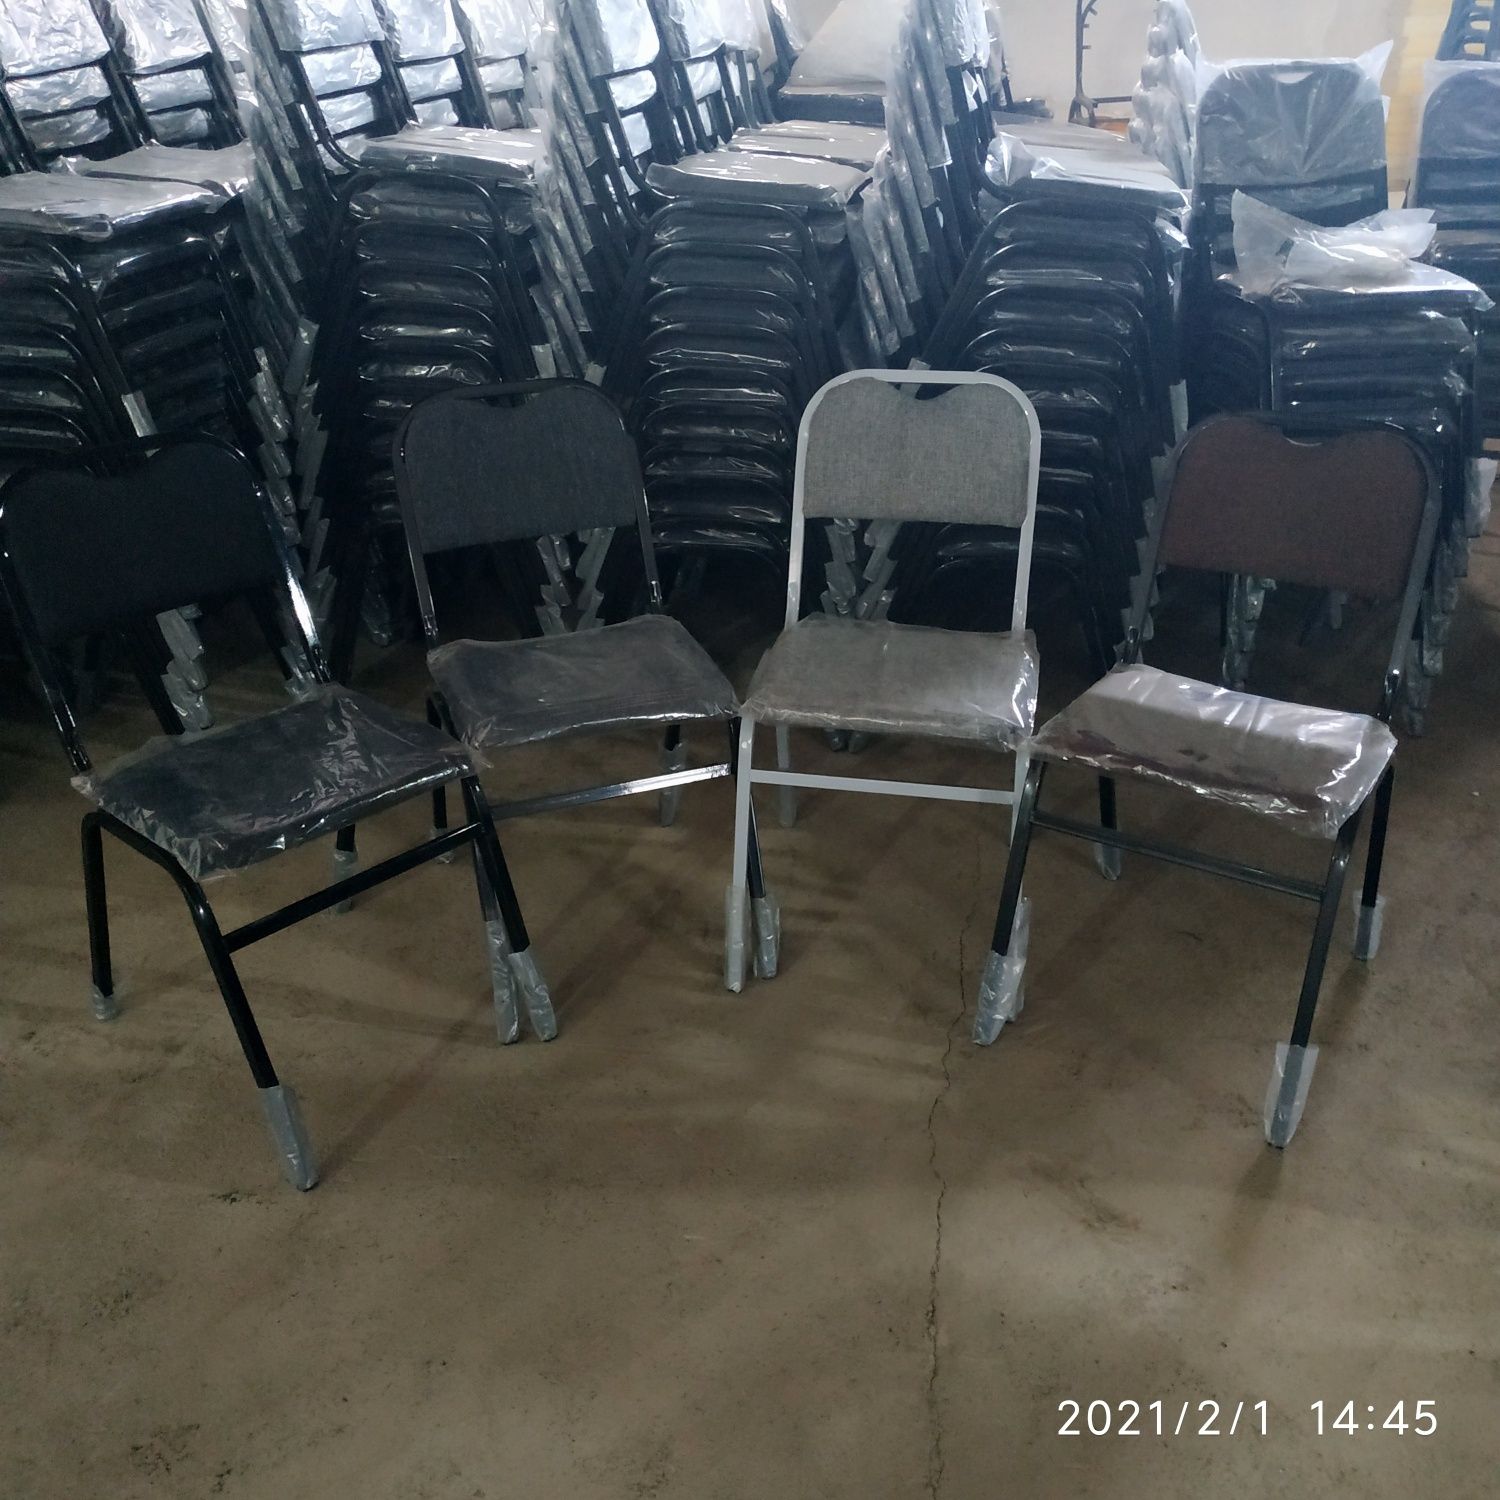 Диван зал ожидание трёхместный также есть стулья Турон и другие издели